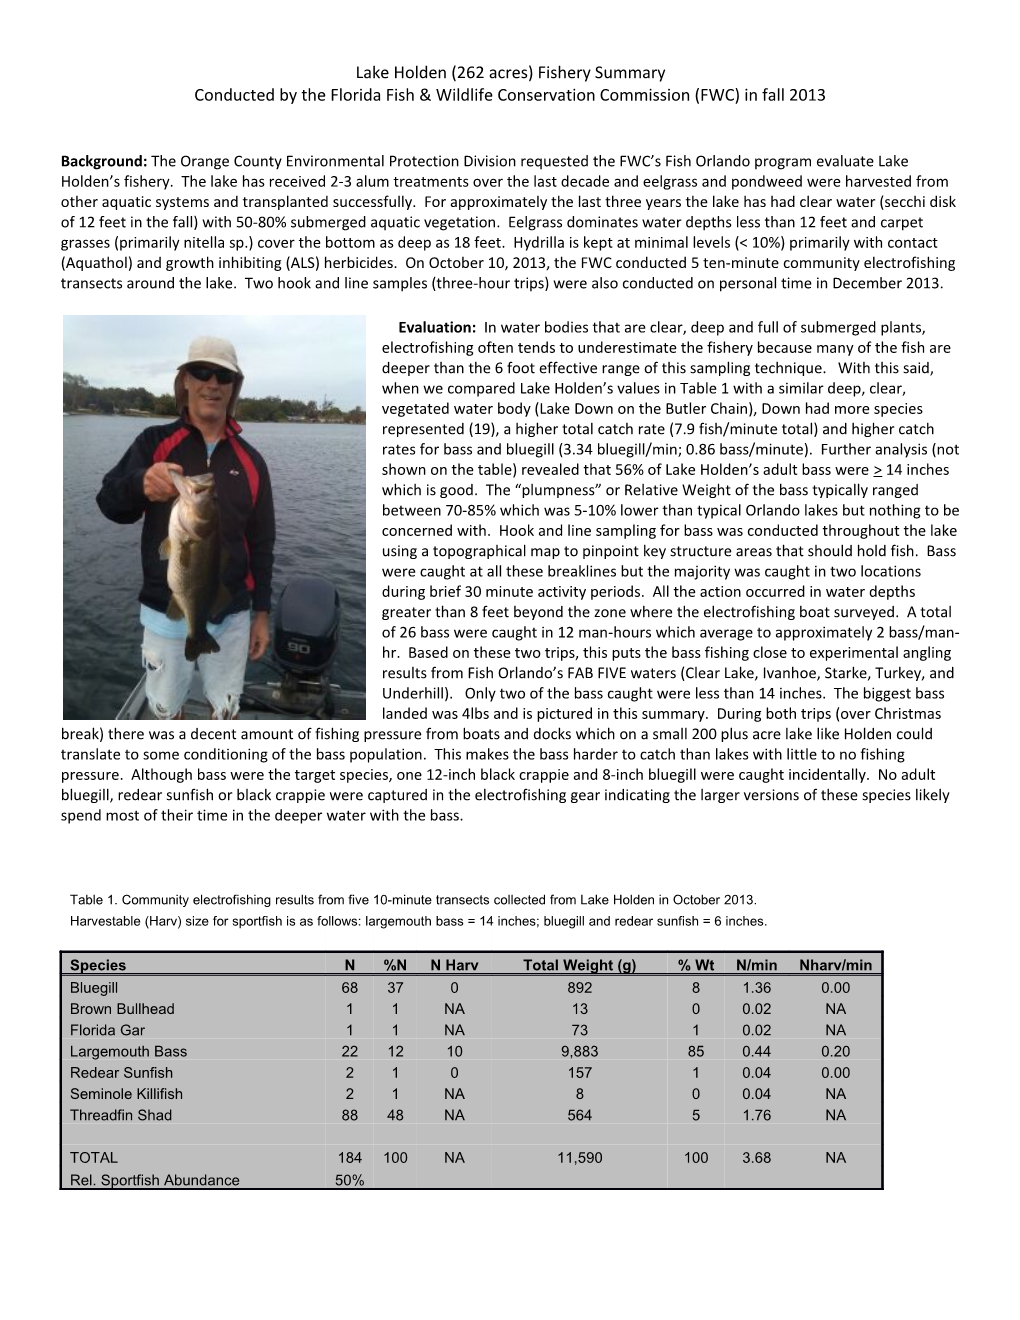 Lake Holden (262 Acres) Fishery Summary